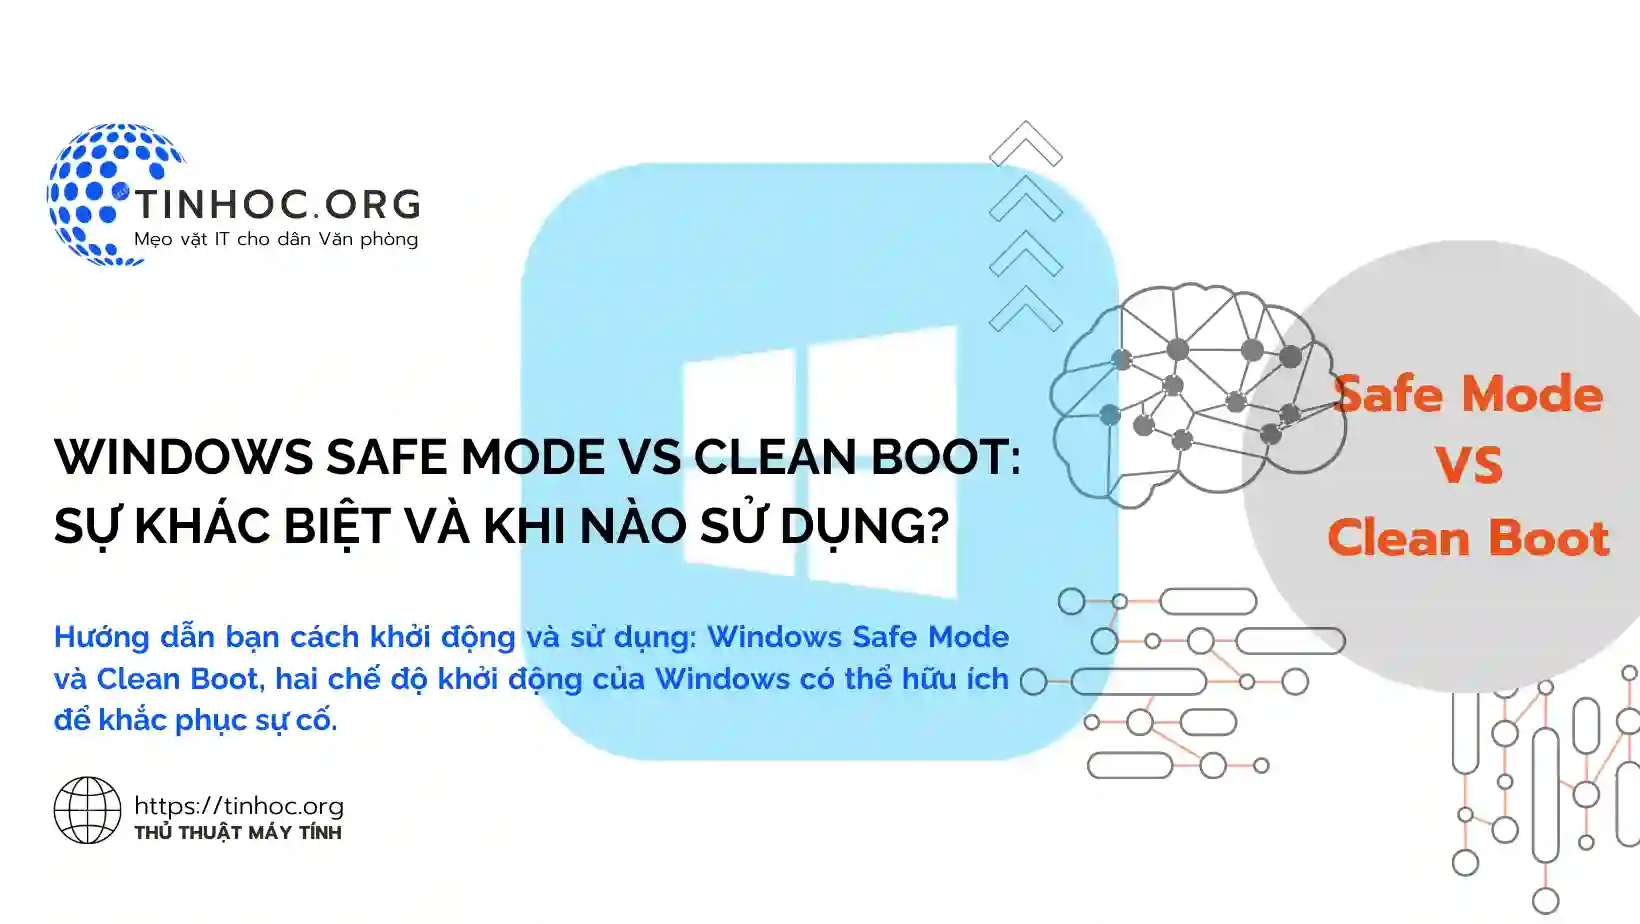 Hướng dẫn bạn cách khởi động và sử dụng: Windows Safe Mode và Clean Boot, hai chế độ khởi động của Windows có thể hữu ích để khắc phục sự cố.